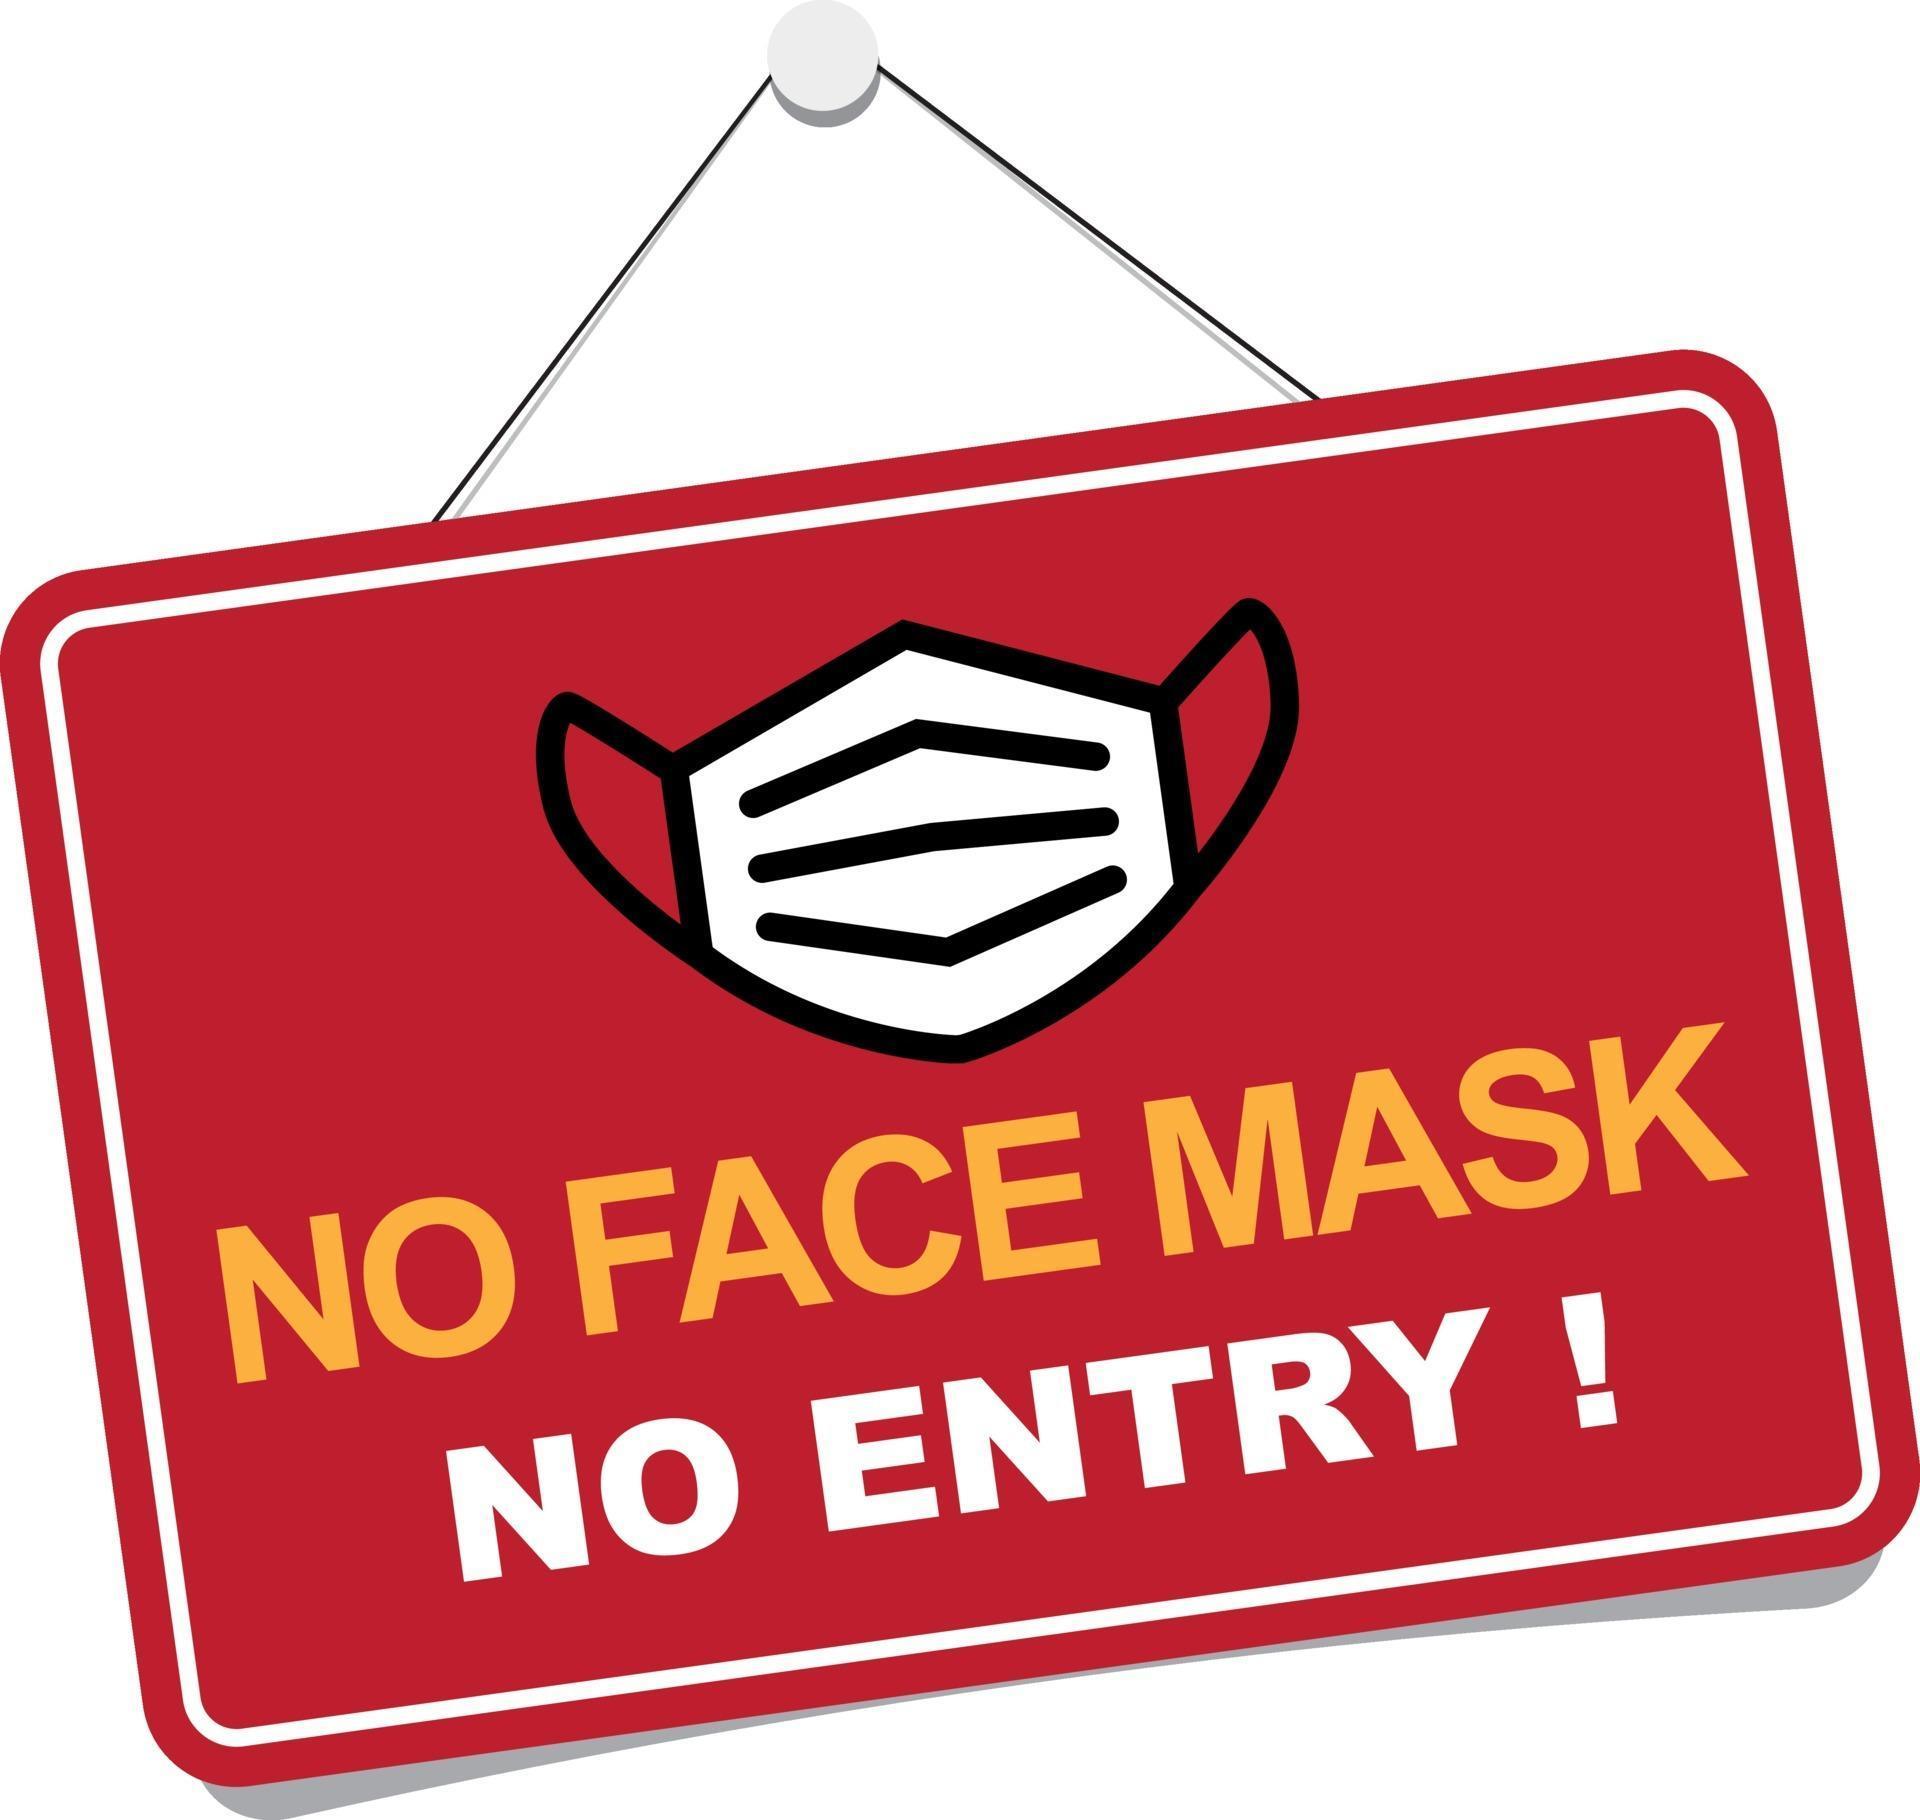 No face mask, no entry sign 2114678 Vector Art at Vecteezy